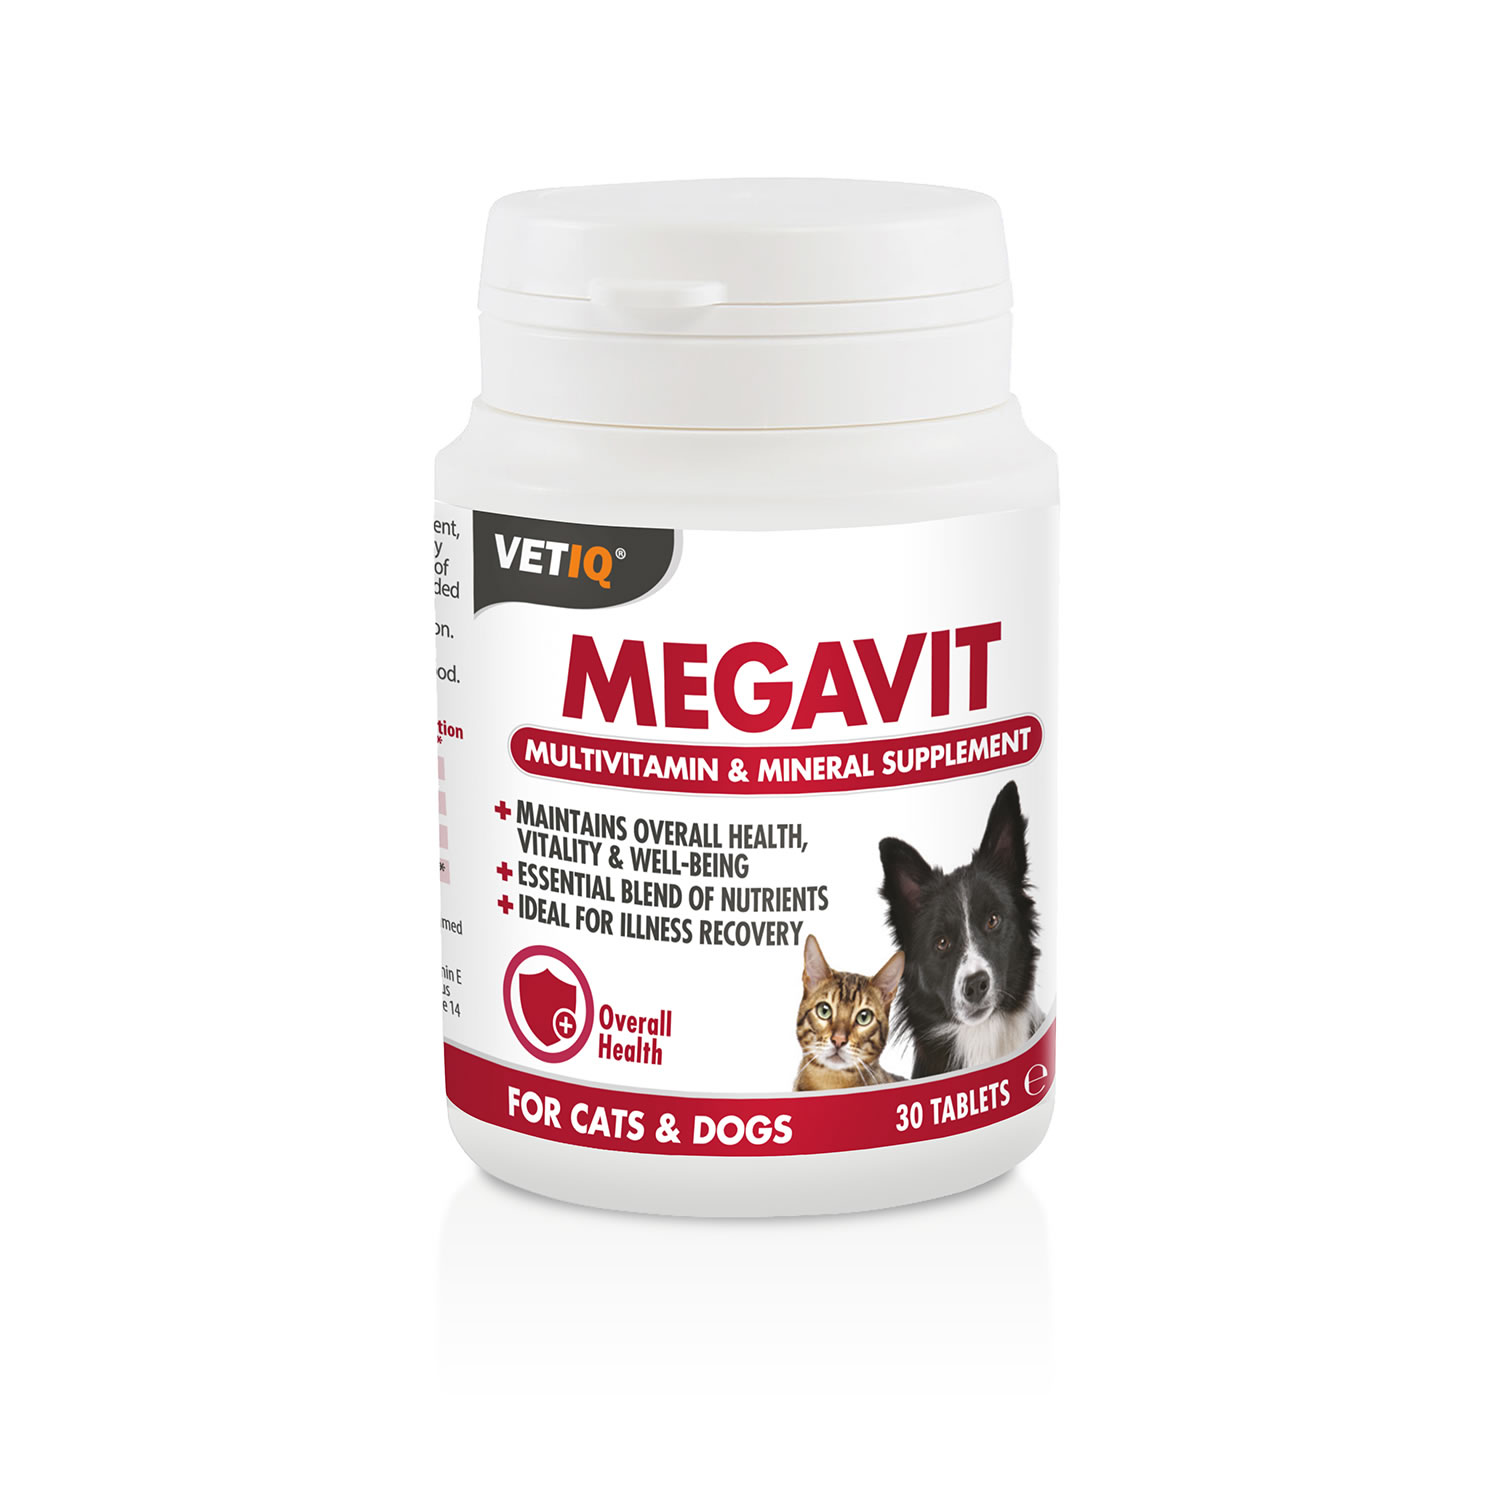 VETIQ MEGAVIT TABLETS FOR CATS & DOGS 30 PACK